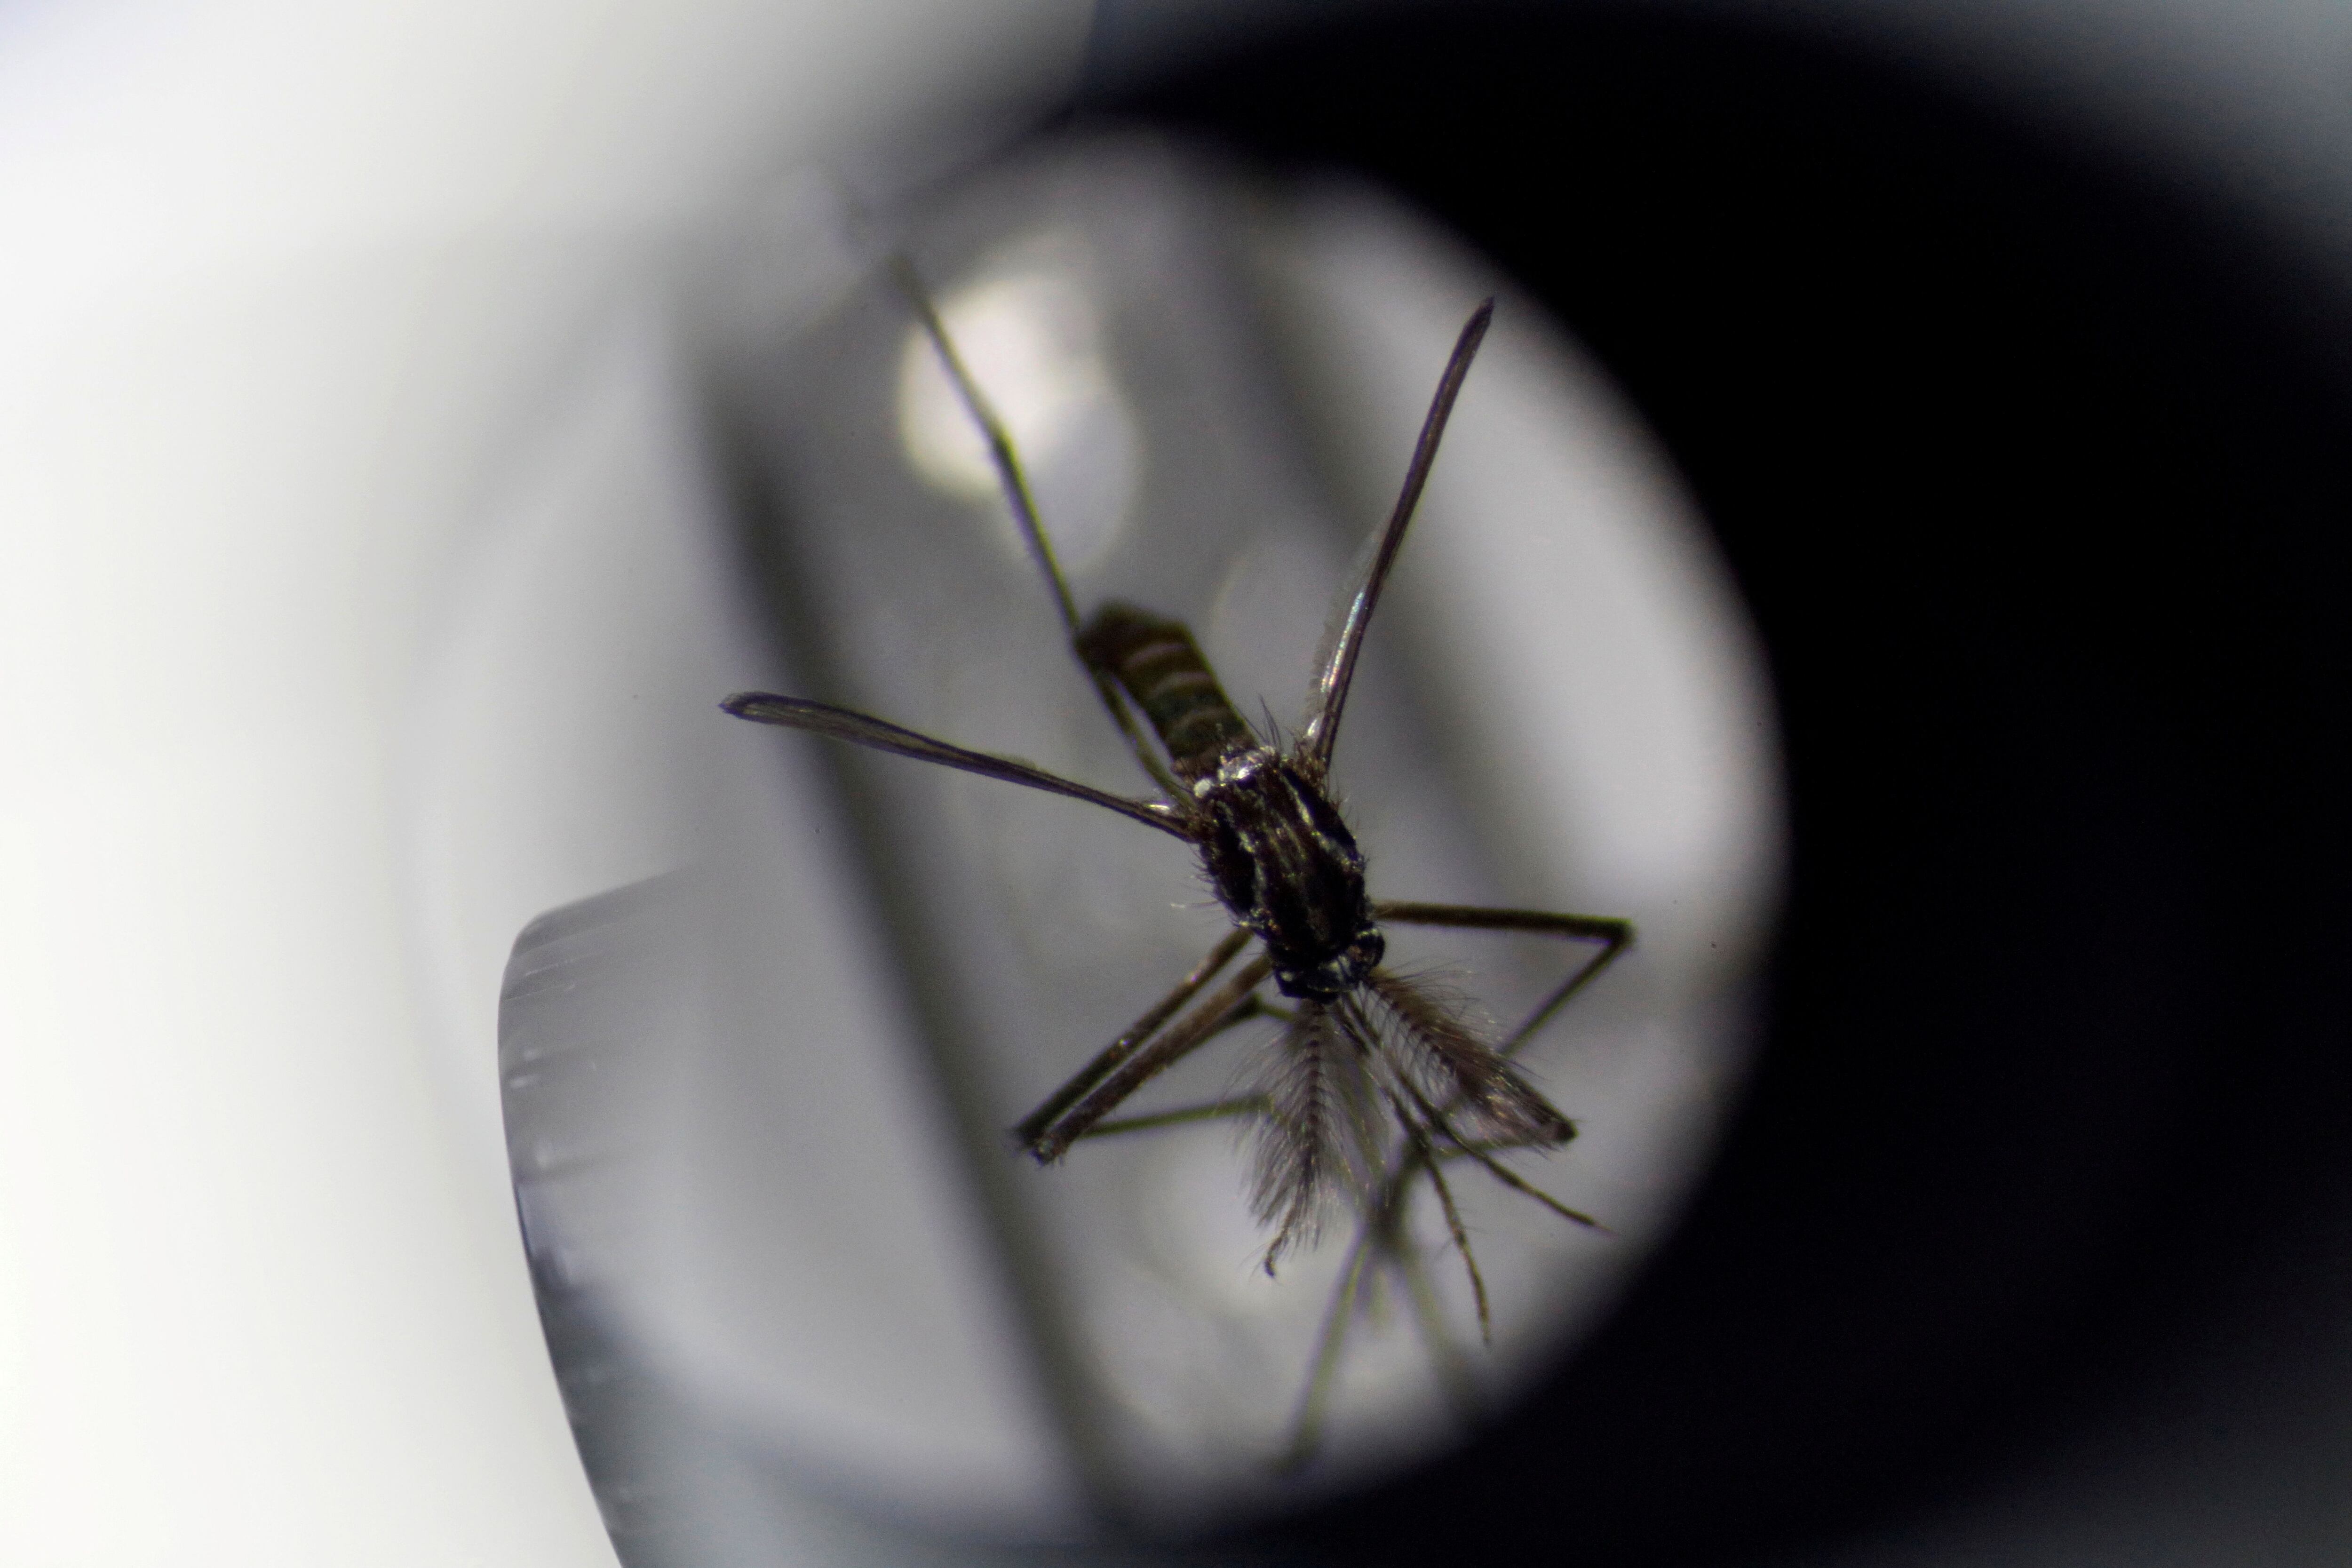 El dengue es una enfermedad viral transmitida por la picadura del mosquito del género Aedes, principalmente por Aedes aegypti, y cuando éste se alimenta con sangre de una persona infectada por el virus dengue, lo adquiere / REUTERS/Edgar Su/File Photo